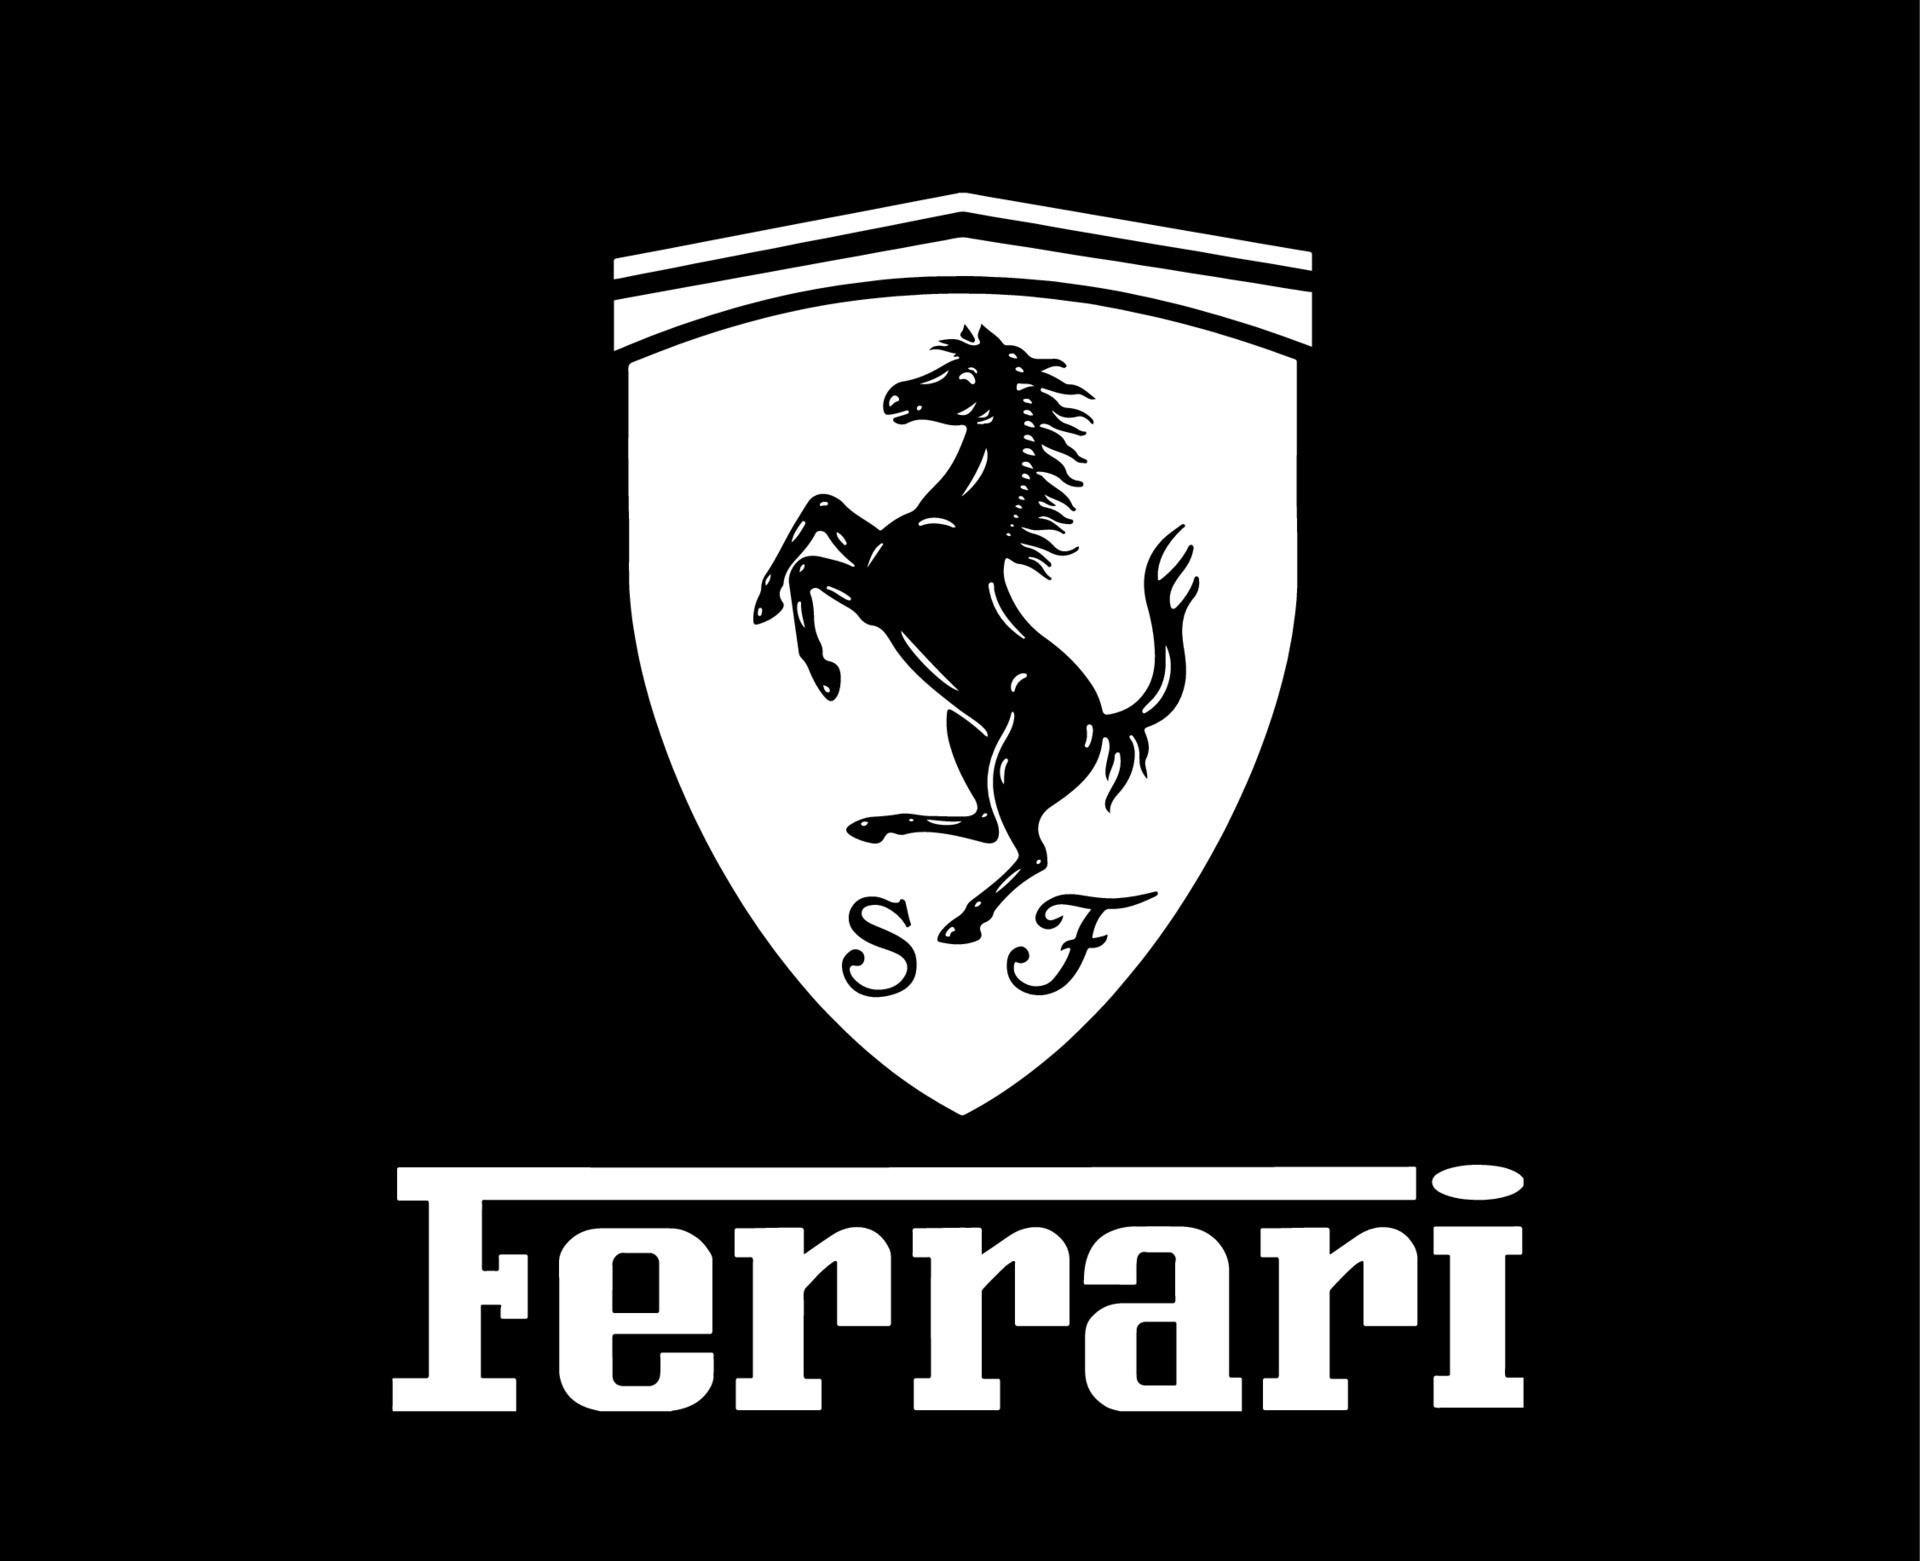 Thương hiệu ô tô sành điệu Ferrari với biểu tượng logo trắng và tên đen. Những chiếc xe huyền thoại này kiêu hãnh trên đường phố như là một biểu tượng của sự sang trọng và hiệu quả. Nếu bạn yêu thích các dòng xe hơi tốc độ cao, hãy cùng tìm hiểu thêm về những mẫu xe của Ferrari để thỏa mãn đam mê của mình.